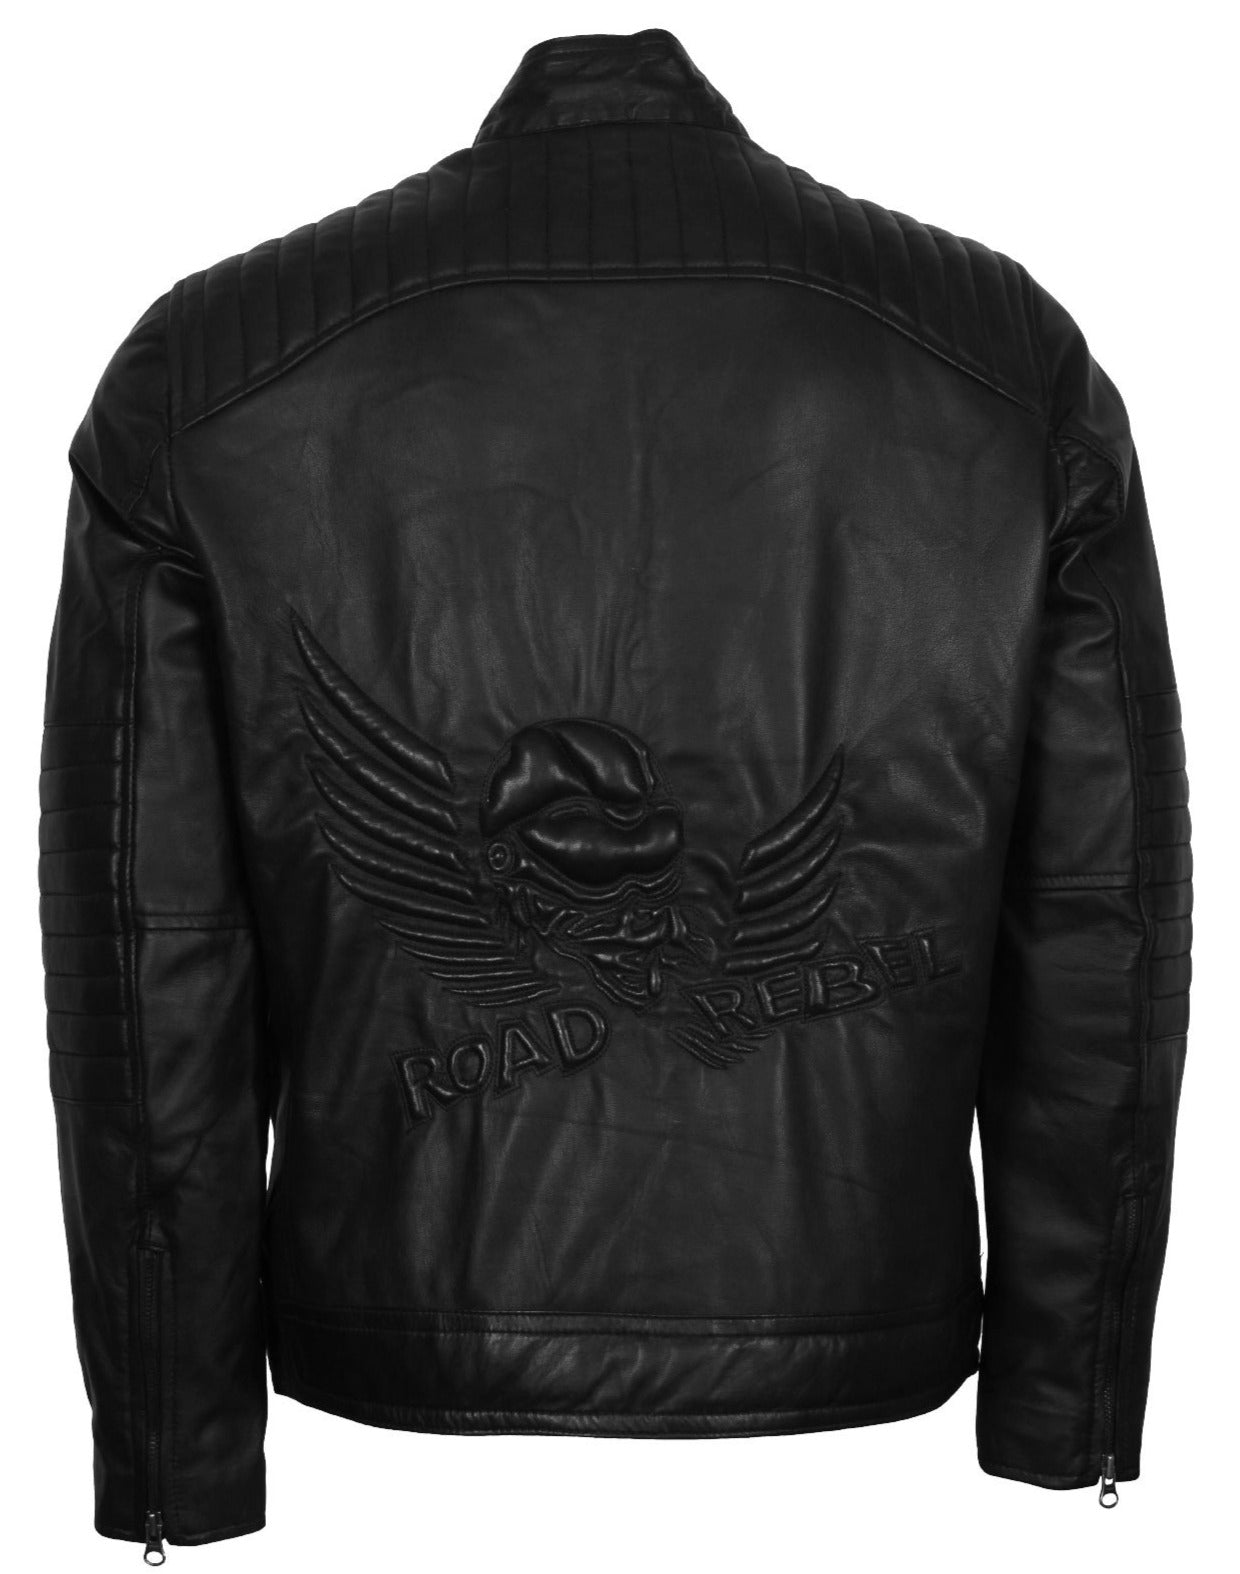 Skull with Wings Road Rebel Motorcycle Jacket Men